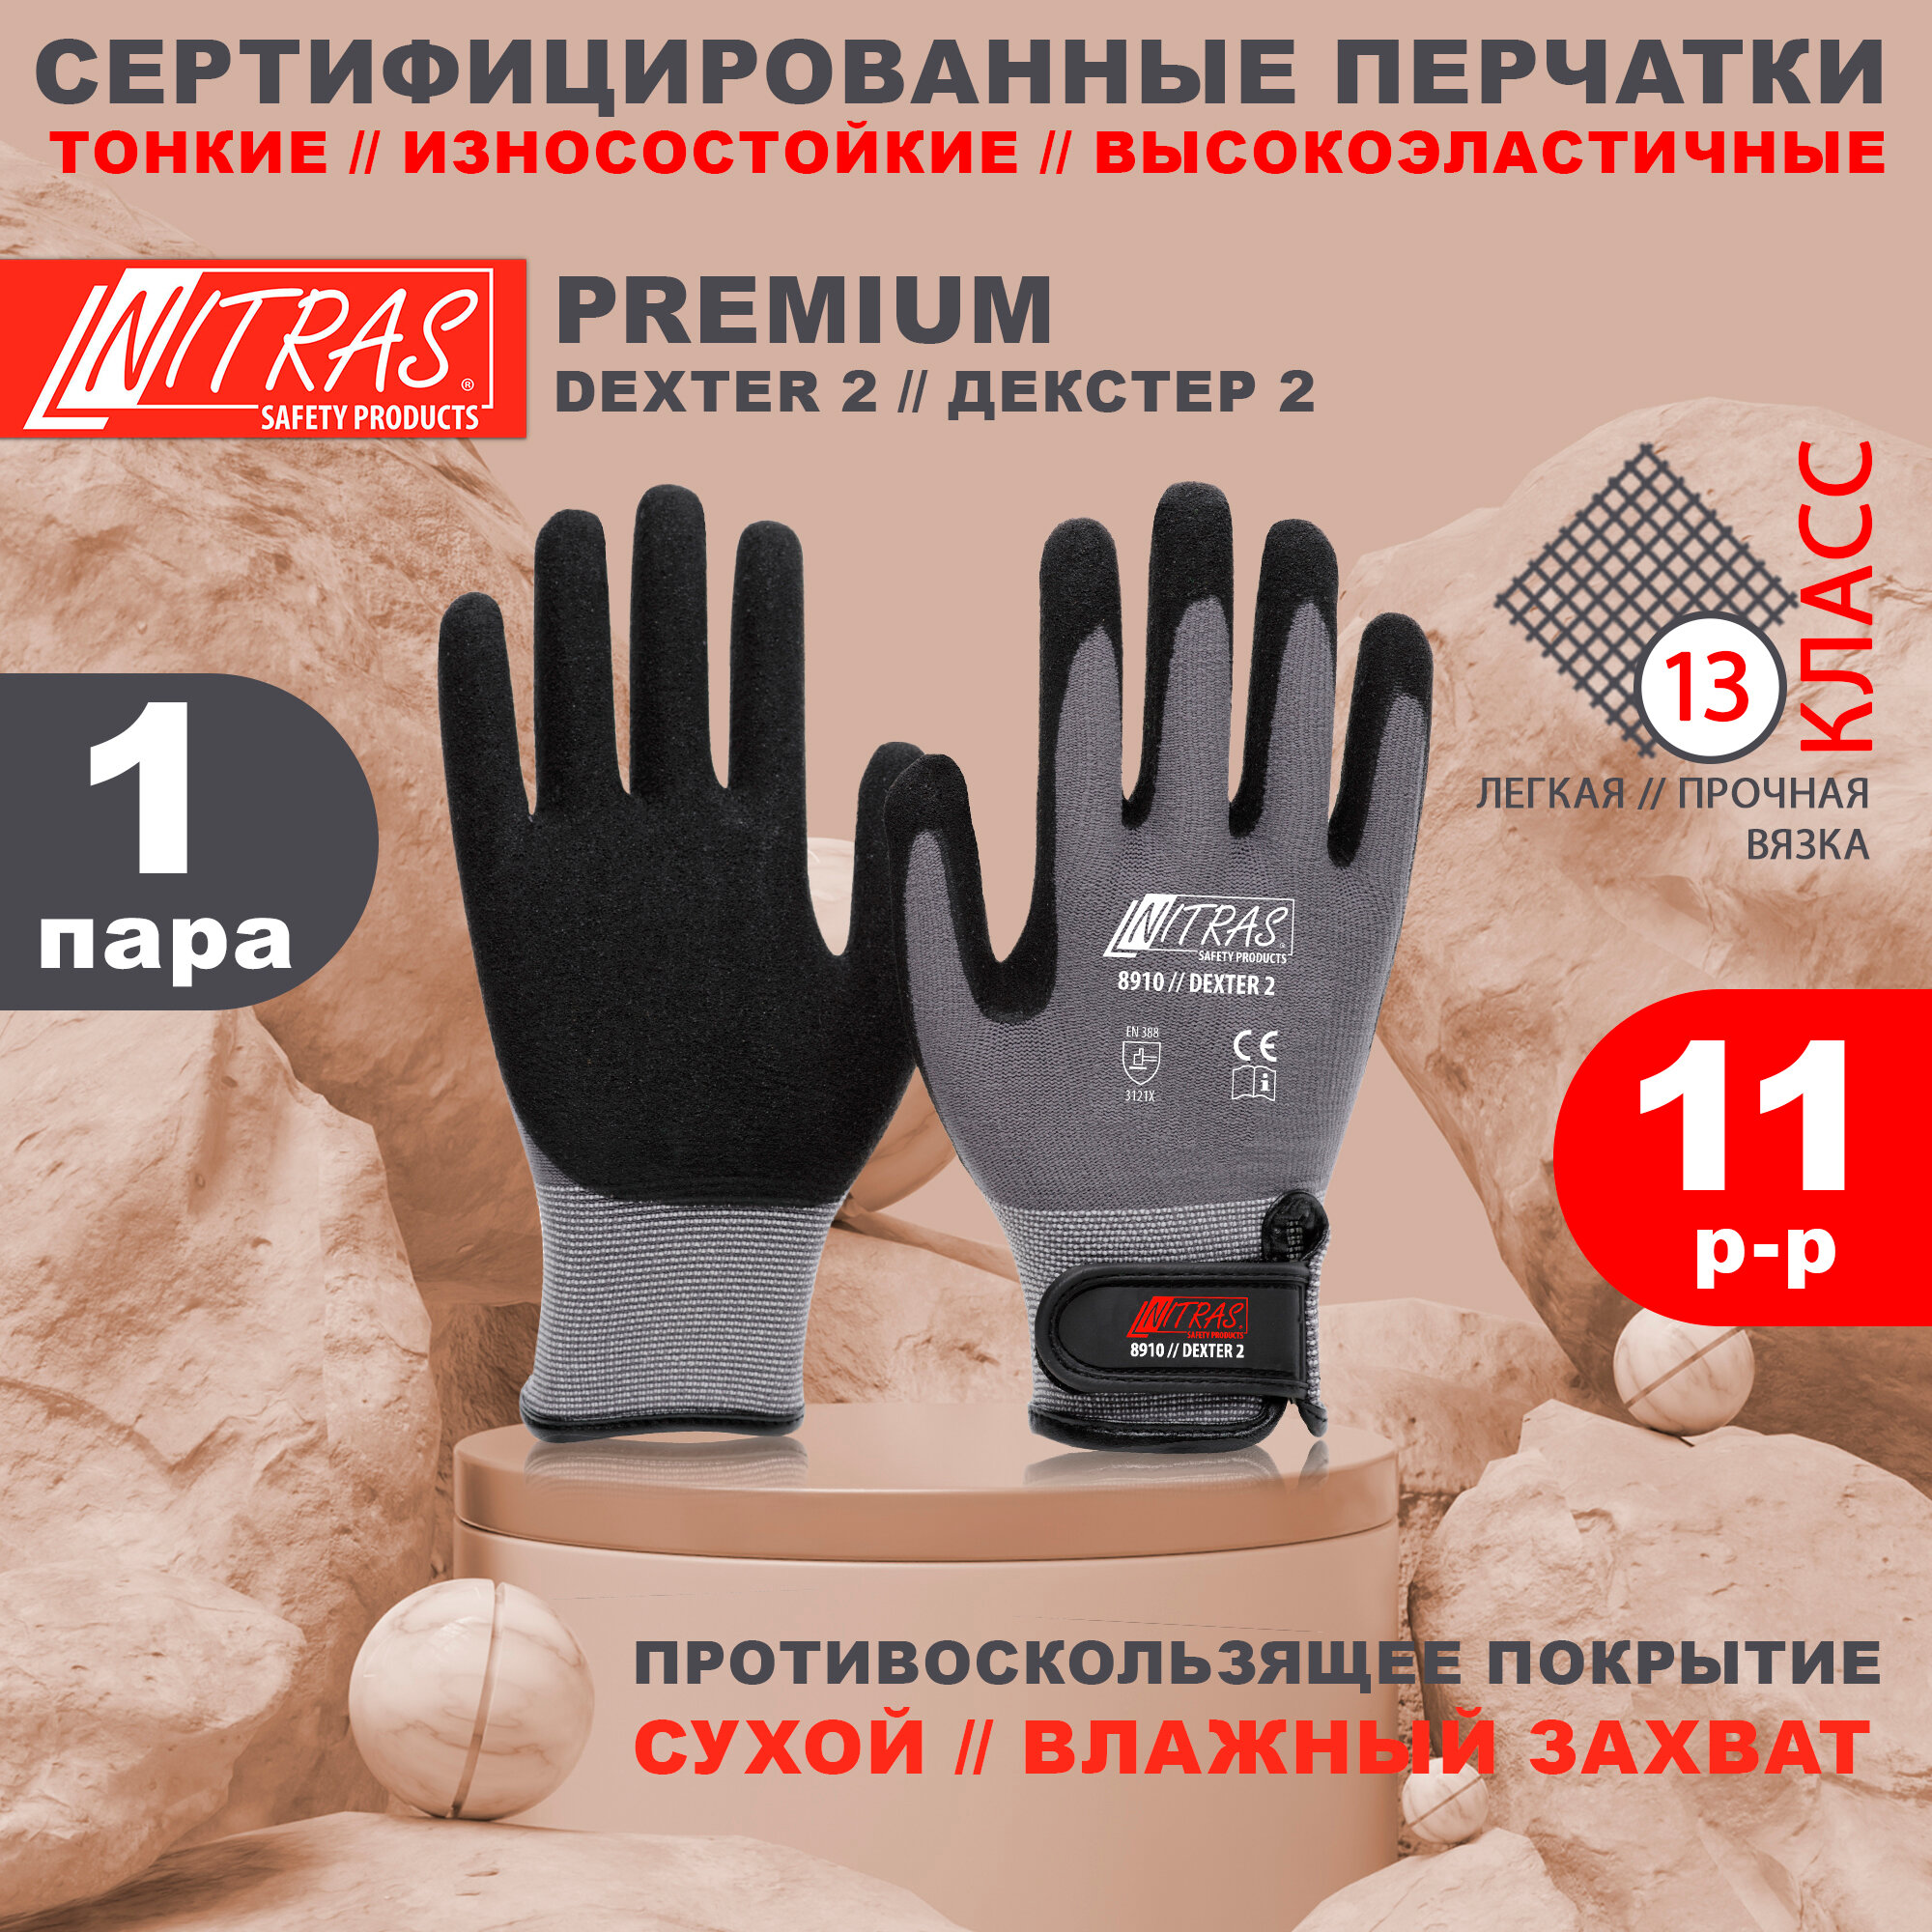 Защитные рабочие перчатки с покрытием из вспененного латекса NITRAS 8910 Dexter 2, Германия, размер 11